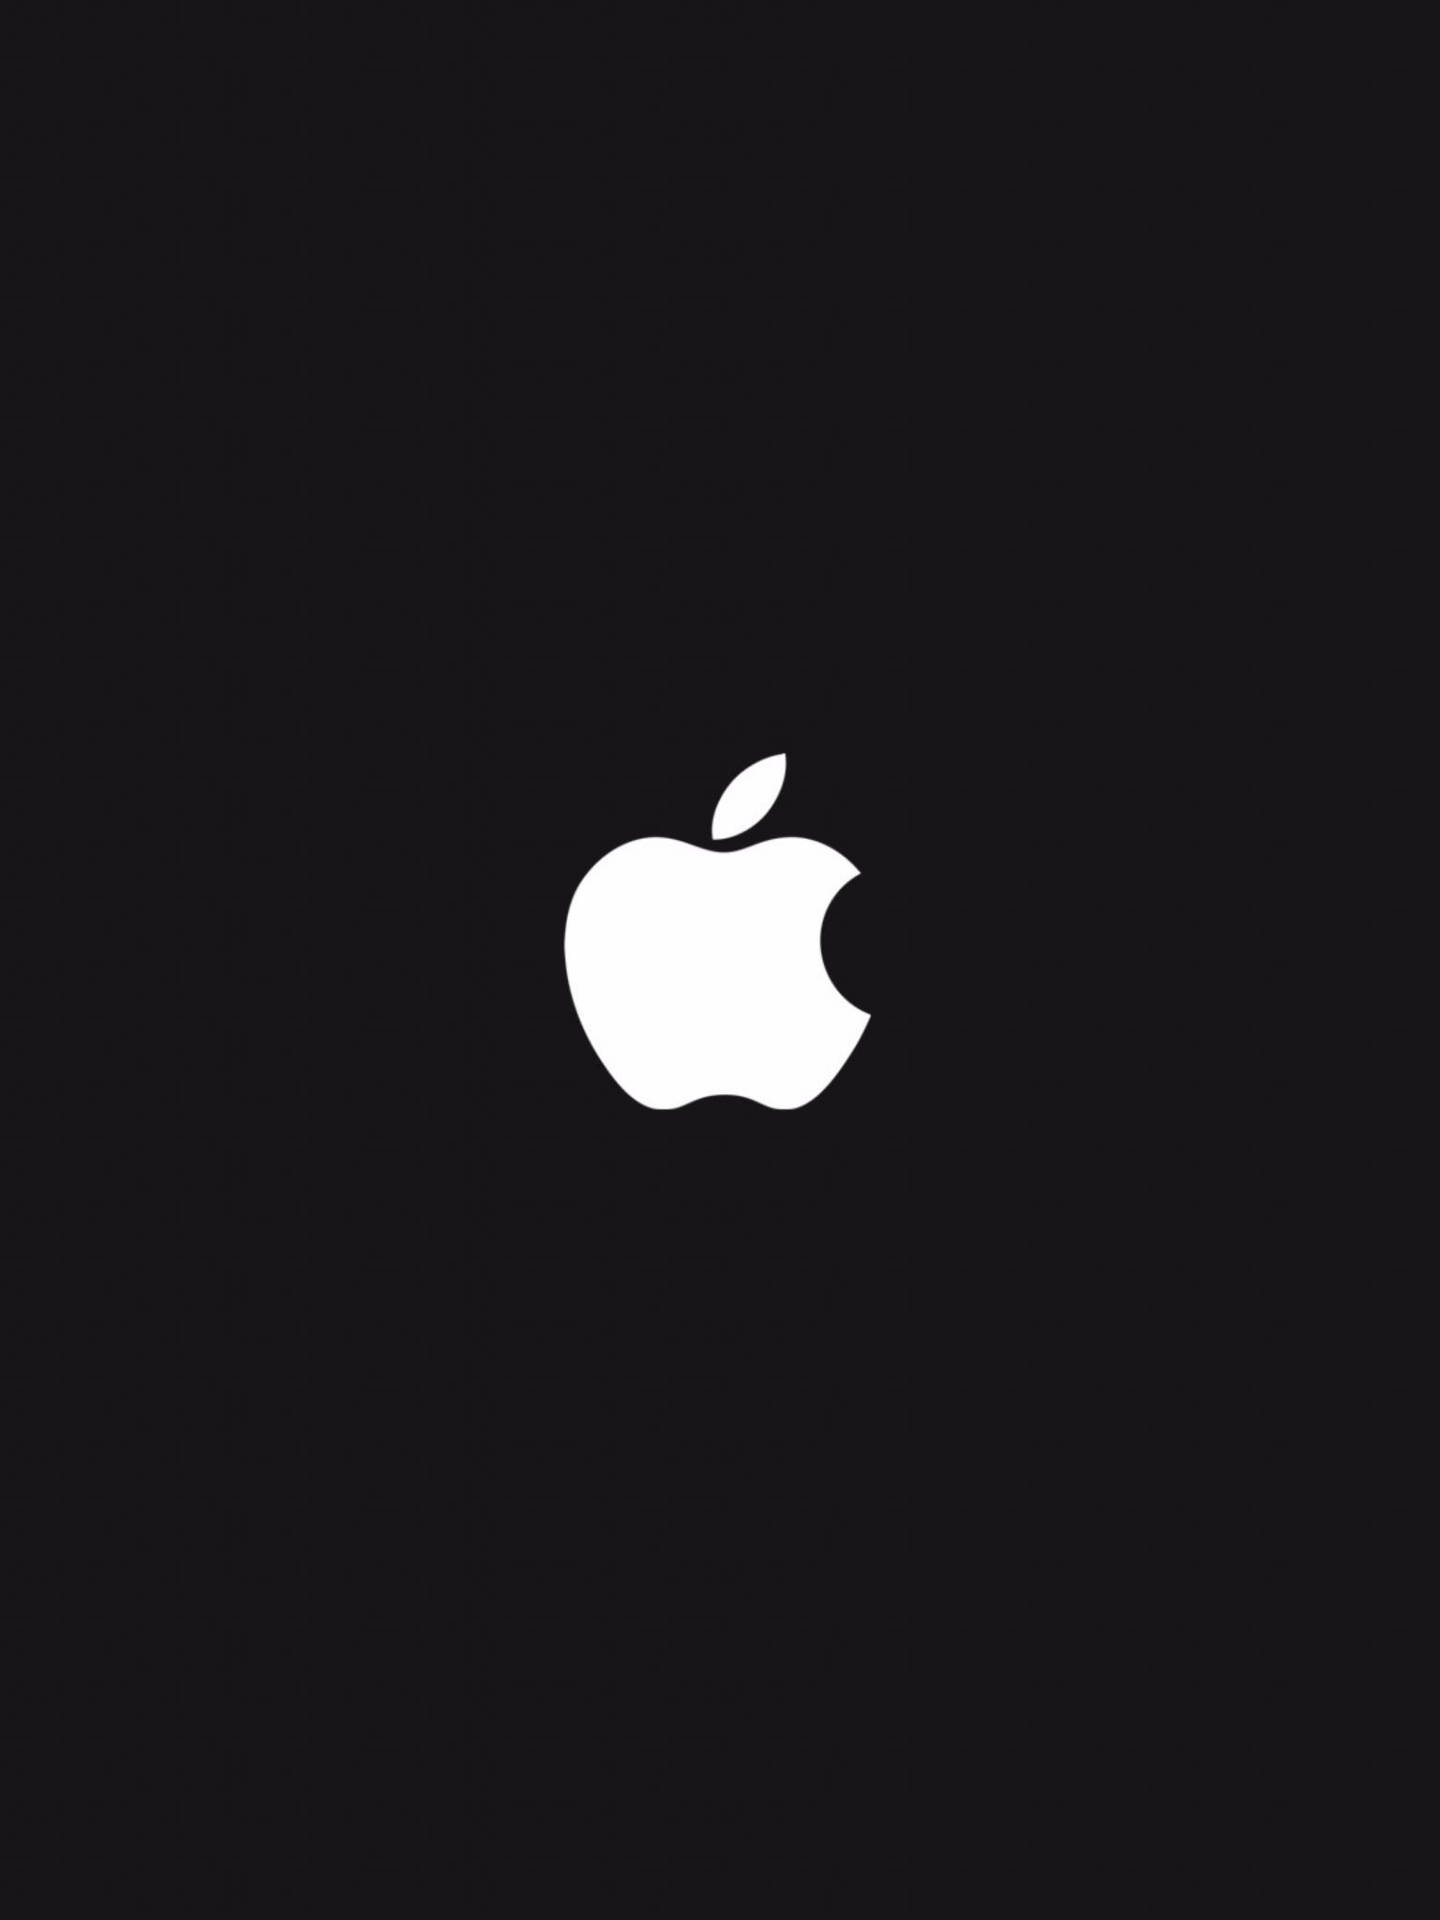 White Apple Logo 4k Wallpaper